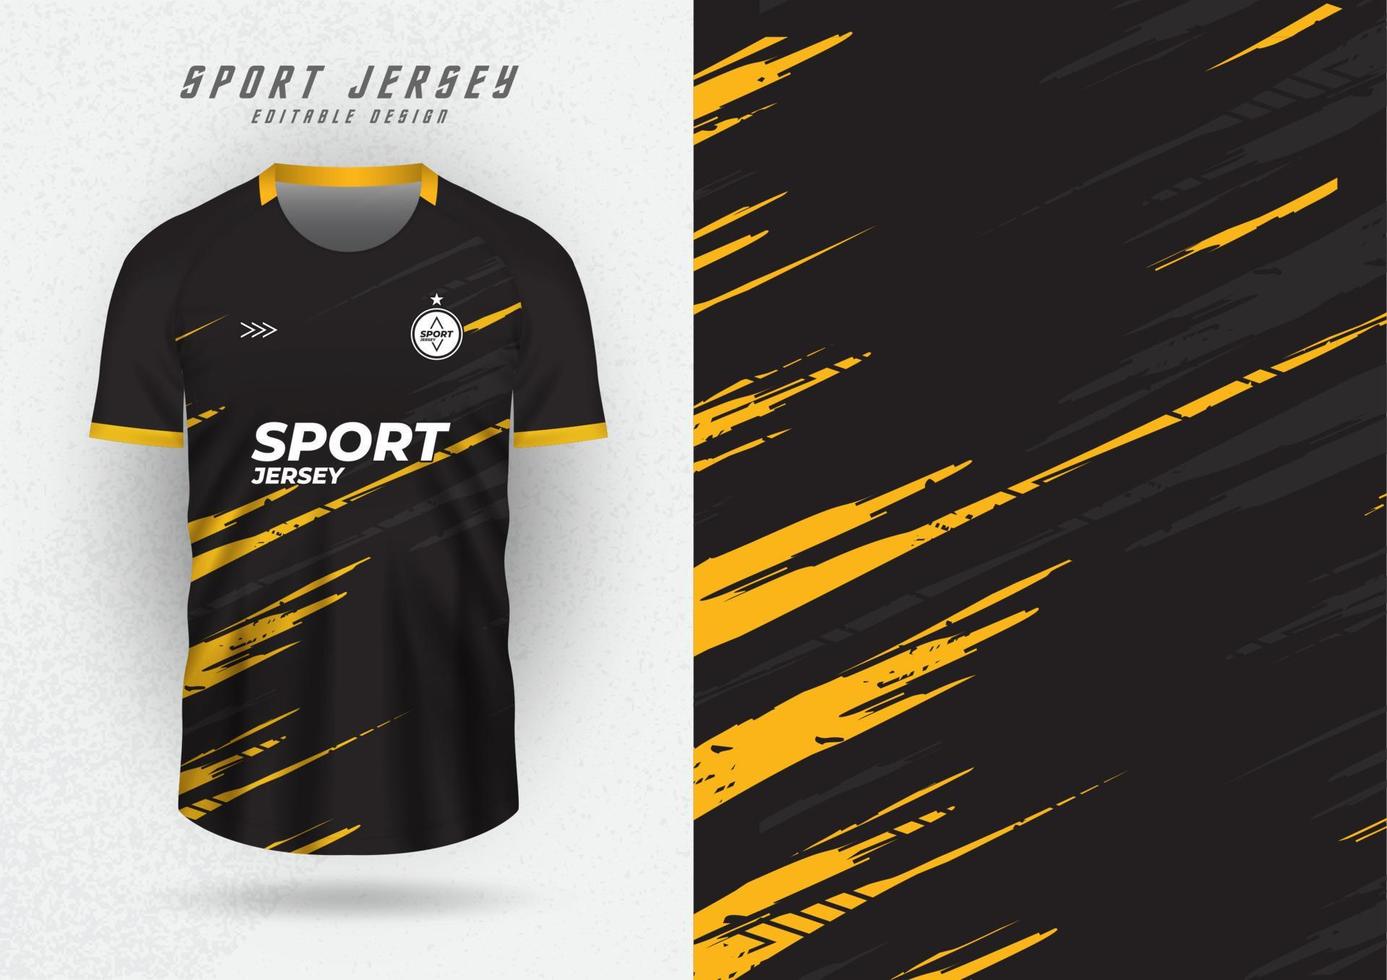 achtergrond voor sport- Jersey, Amerikaans voetbal shirt, rennen shirt, racing shirt, zwart toon patroon en geel kant strepen. vector